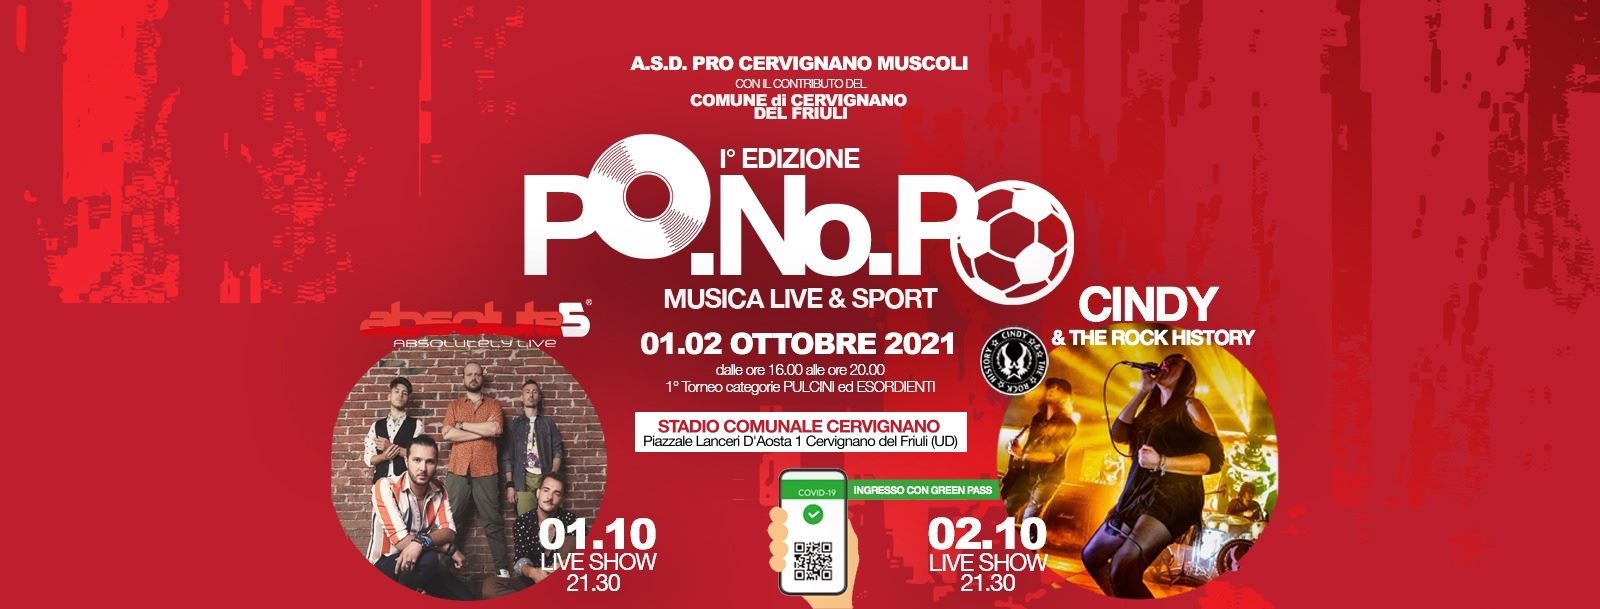 PO.NO.PO - Musica live & Sport - STADIO COMUNALE CERVIGNANO - EventiFVG.it